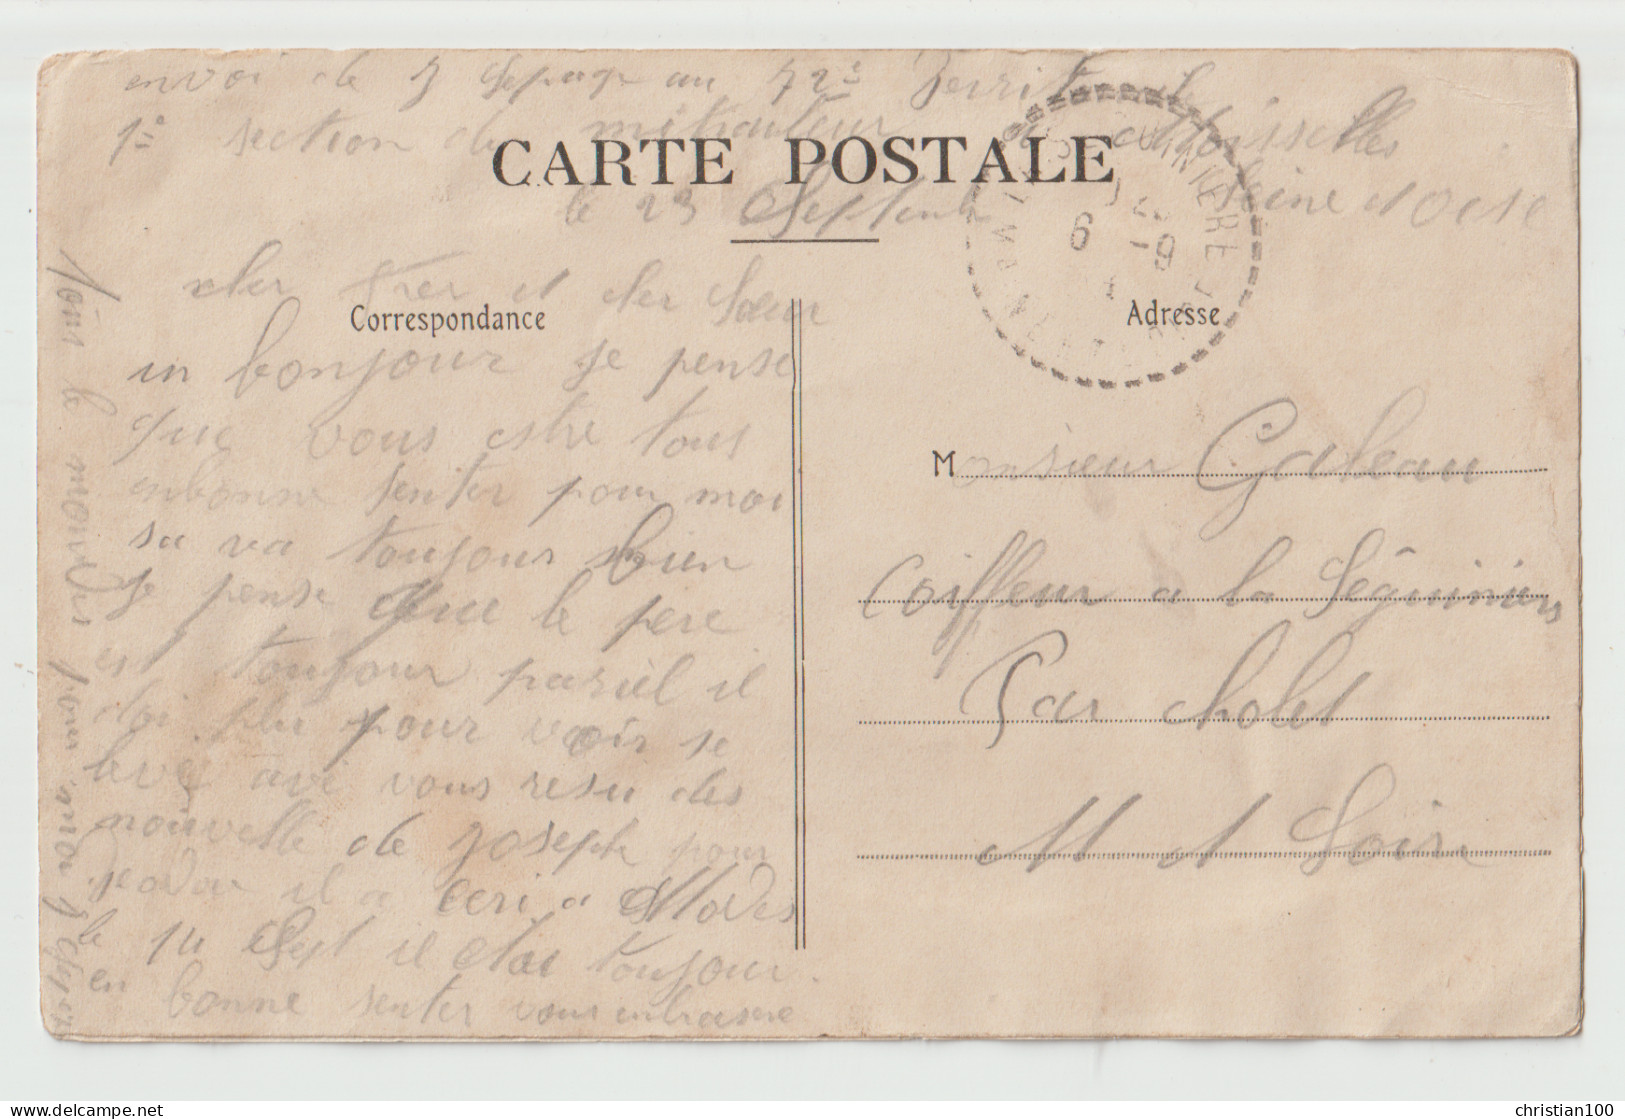 MOISSELLES - RUE DE PARIS - CHARCUTERIE MAISON E. BEUF - EPICERIE - HOTEL - ECRITE 1907 - CARTE PEU COURANTE - EN L'ETAT - Moisselles